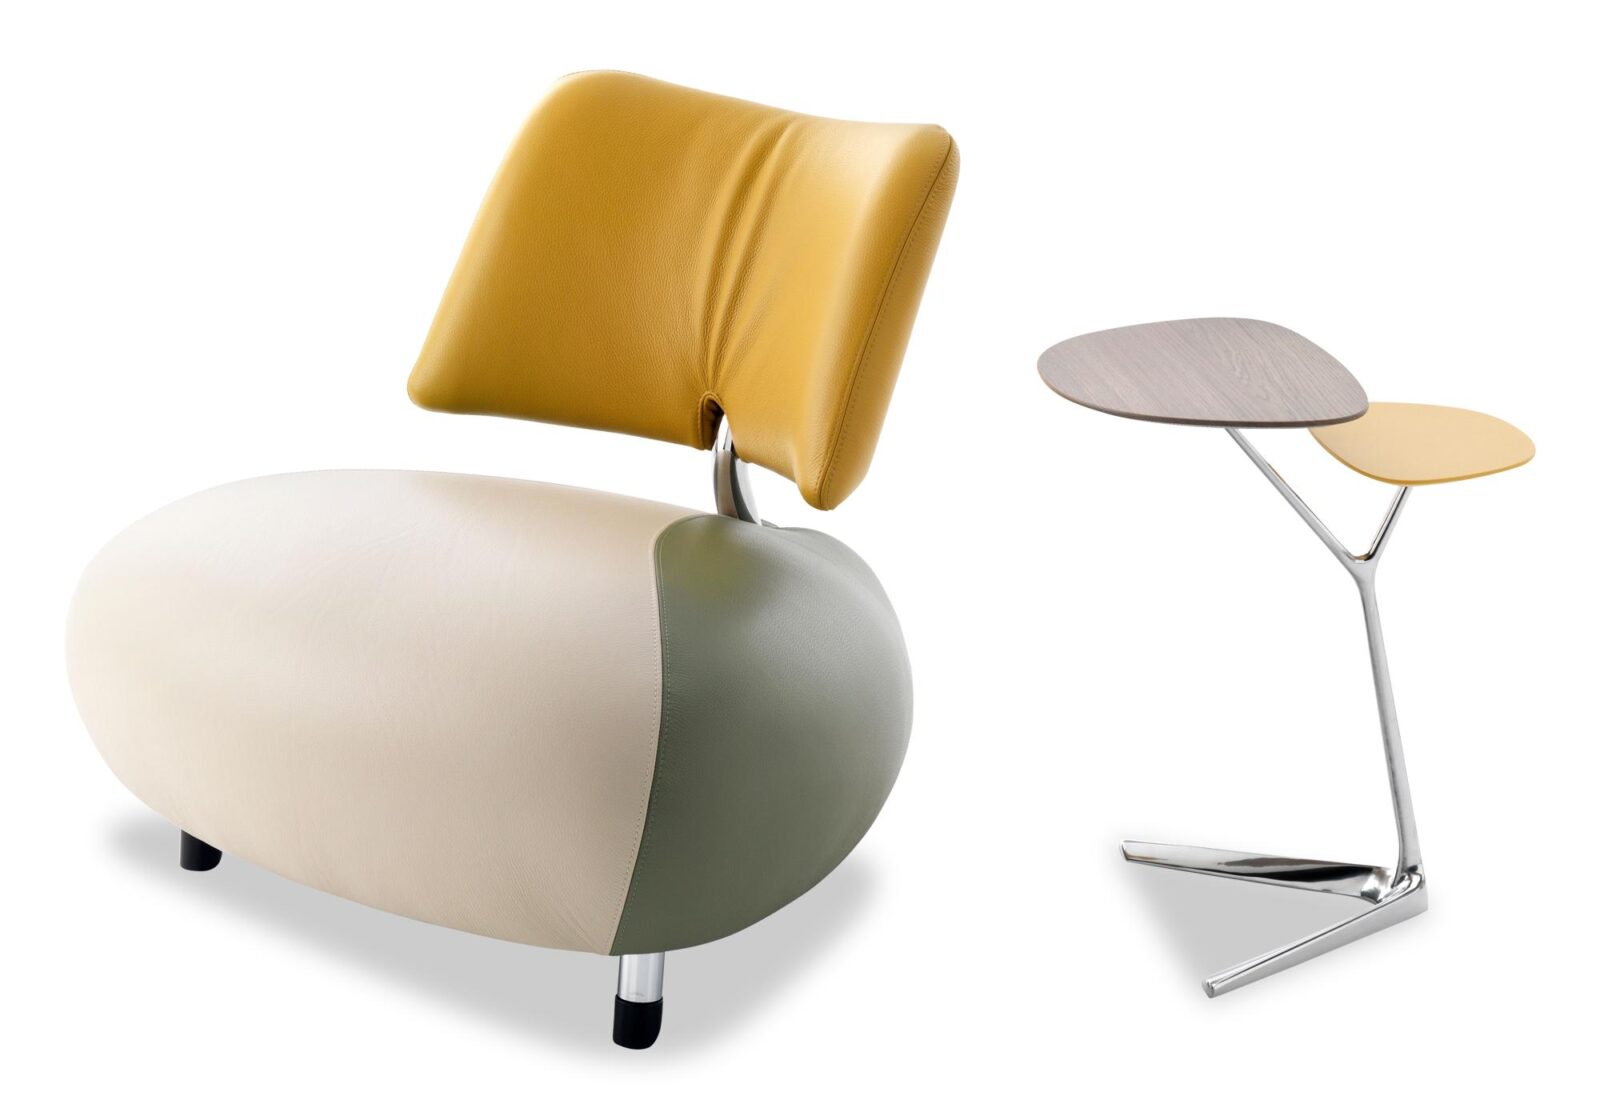 Sessel Pallone mit Rückenlehne. Bezug: Leder. Farbe: Polar-Olivine-Gelb. Erhältlich bei Möbel Gallati.